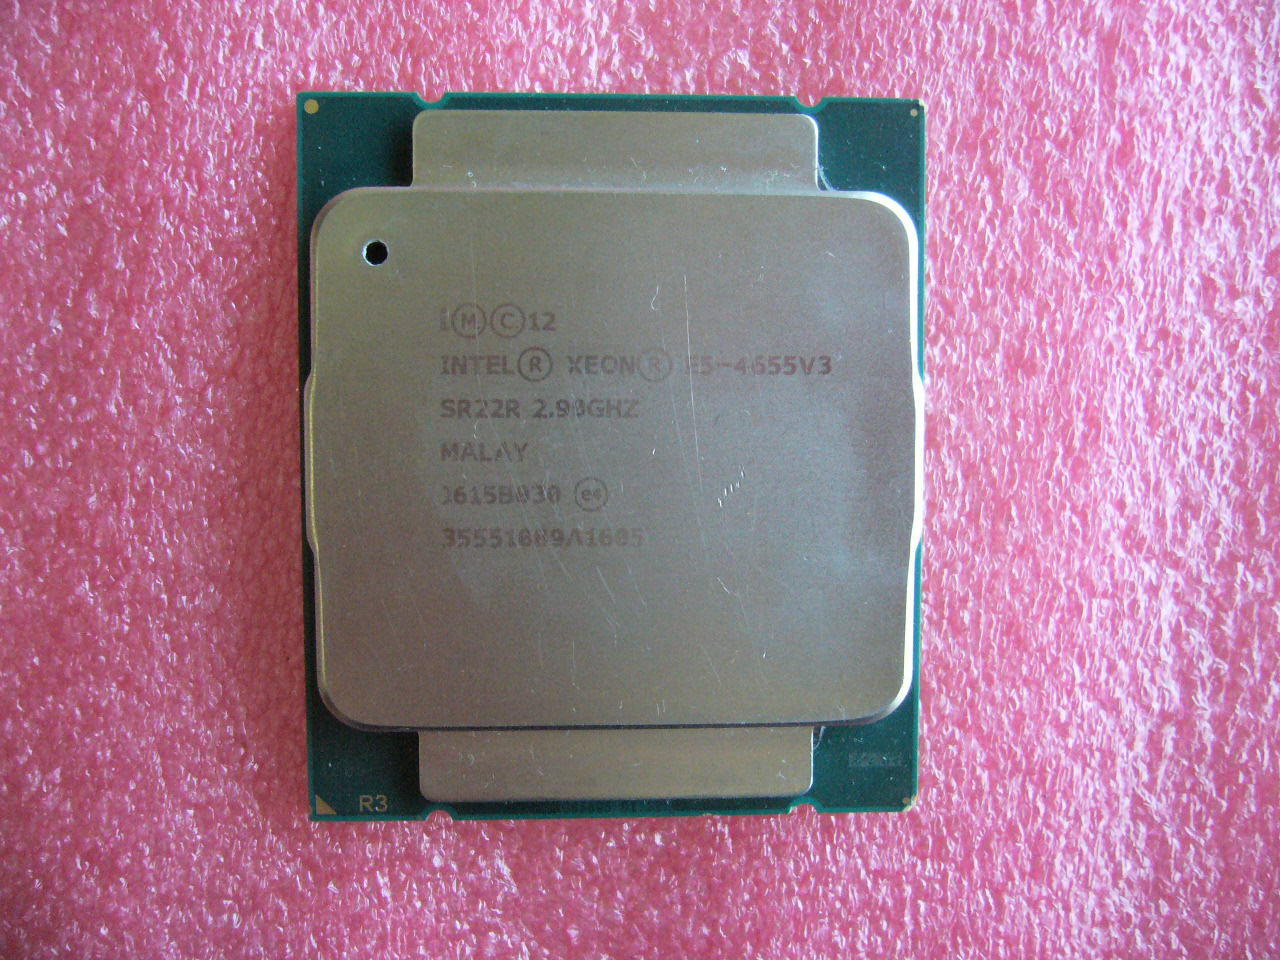 QTY 1x Intel Xeon E5-4655 V3 CPU 6-Cores 2.9 Ghz 20MB Cache LGA2011-3 SR22R